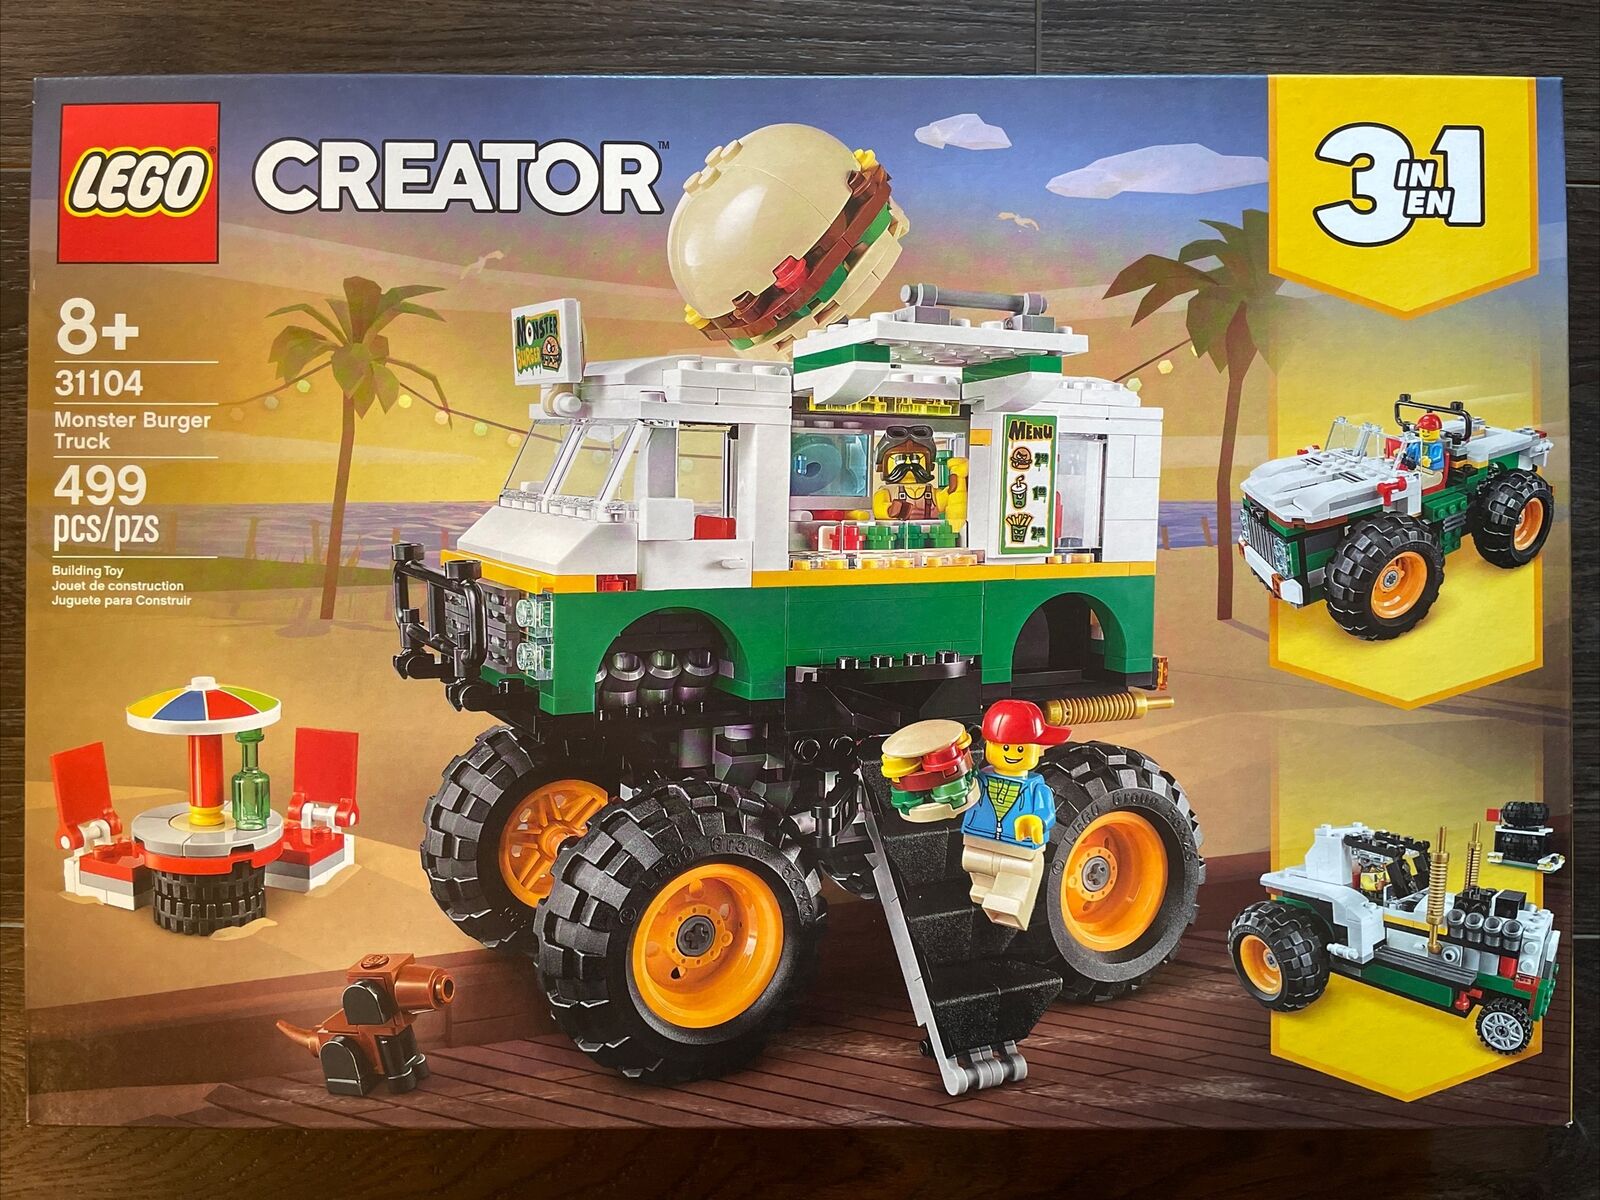 New! LEGO Monster Burger Truck Creator 31104 Retired SEALED!